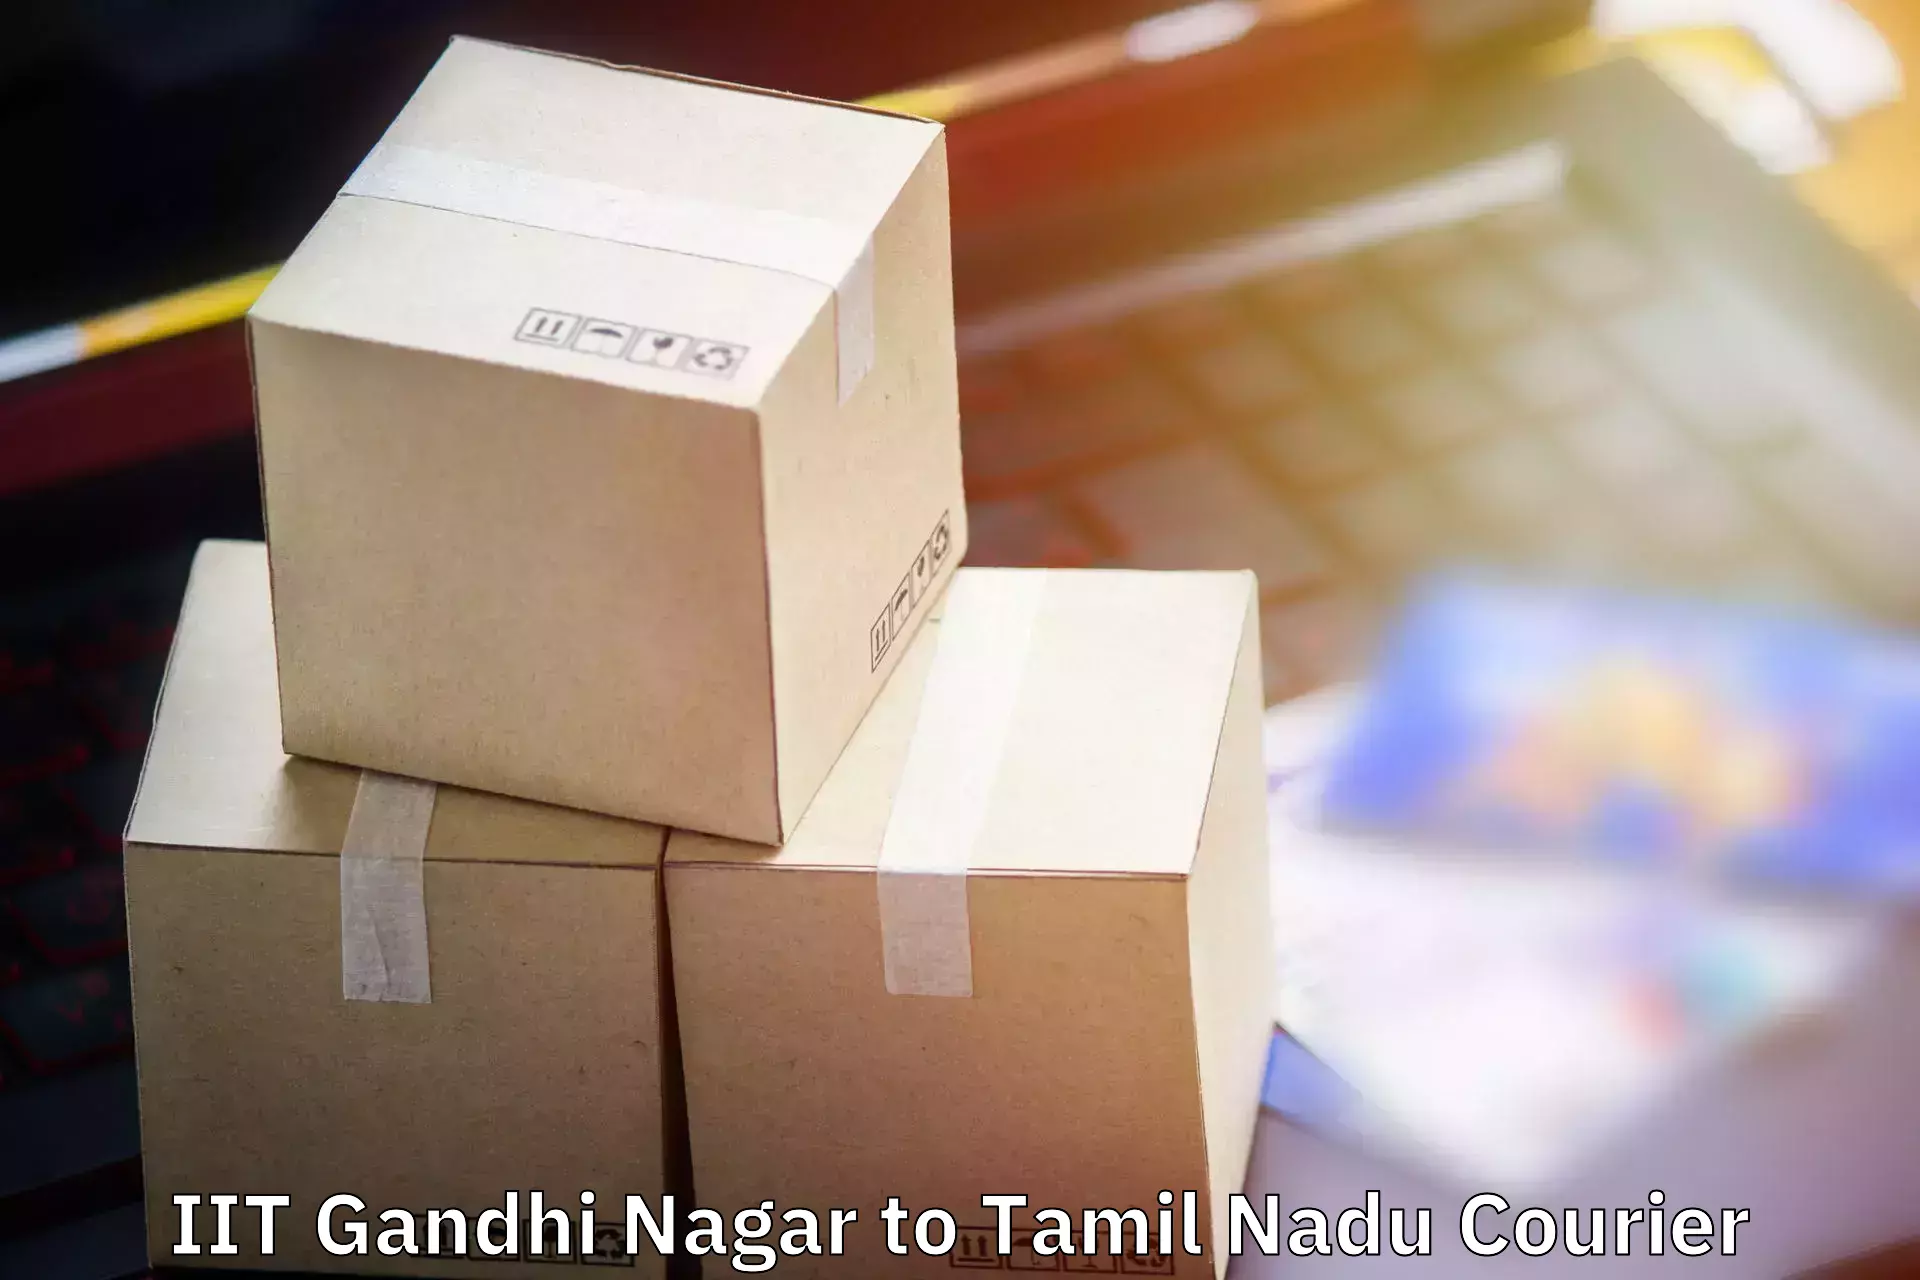 Electronic items luggage shipping in IIT Gandhi Nagar to Maharajapuram